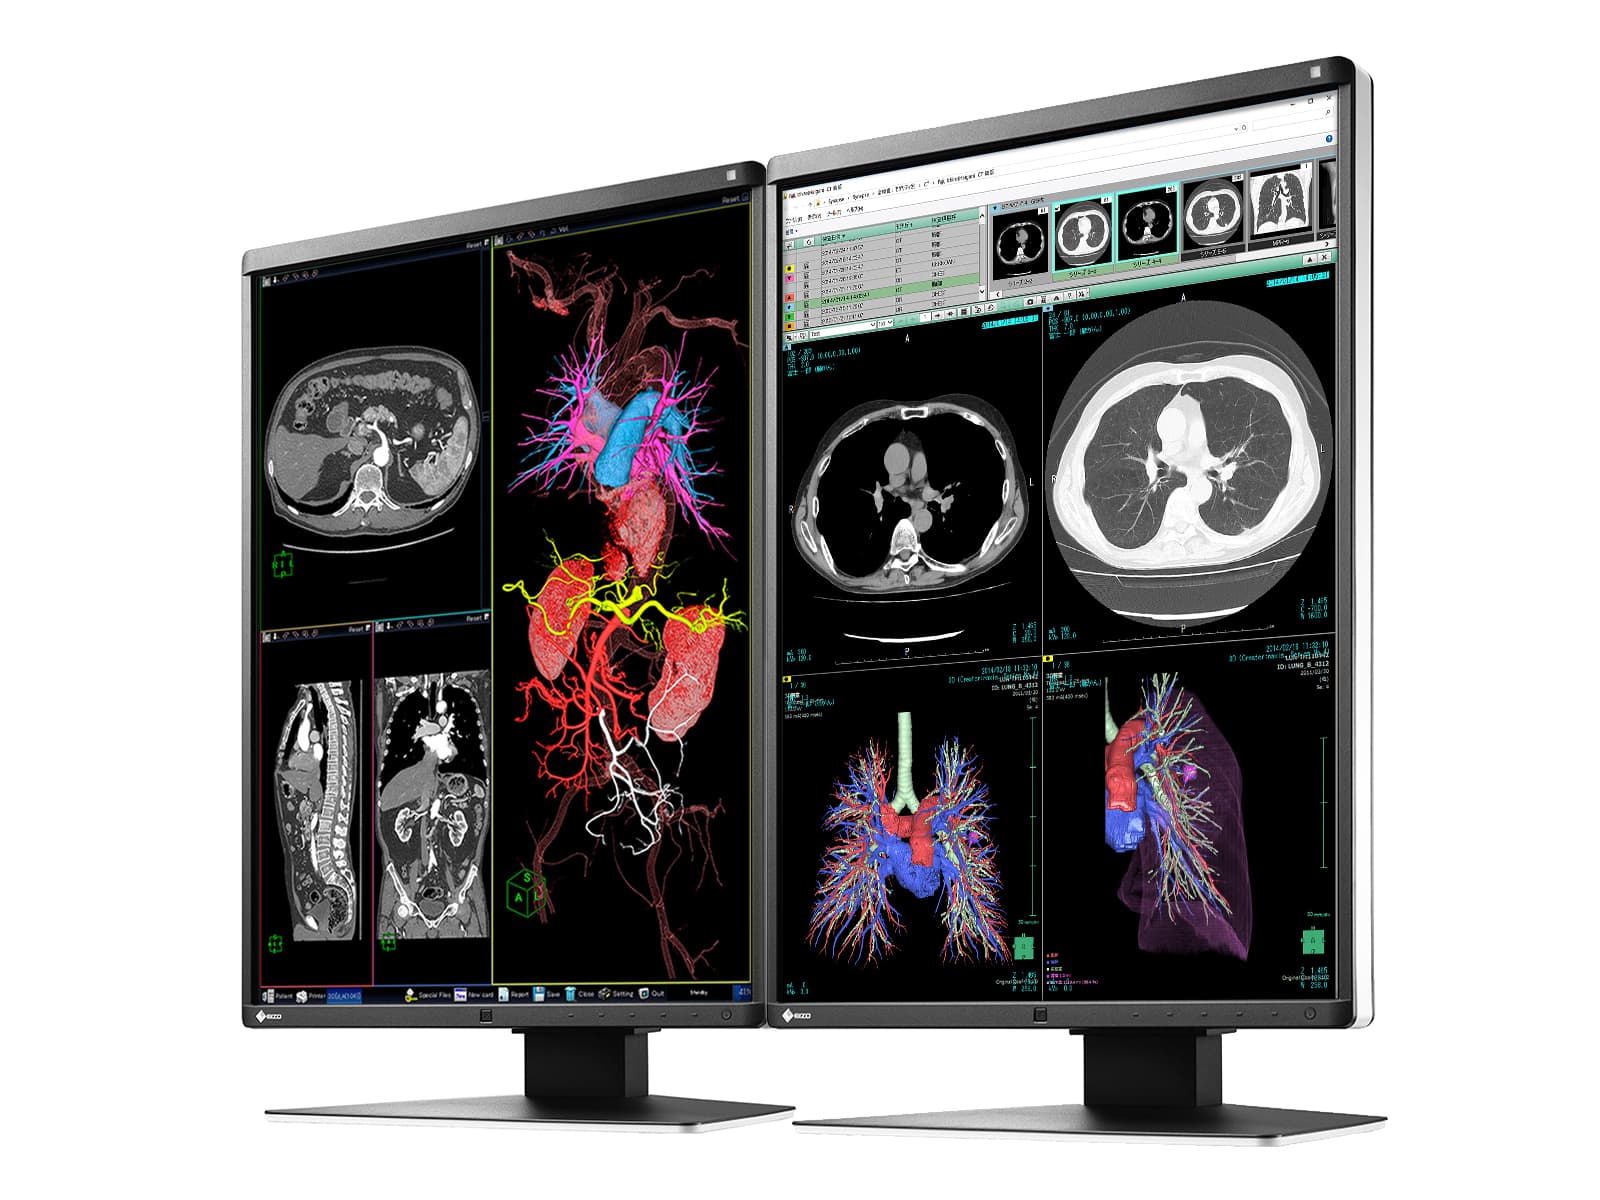 Eizo RadiForce RX350 3MP 21" Color LED General Radiology Diagnostic Display (RX350) Monitors.com 